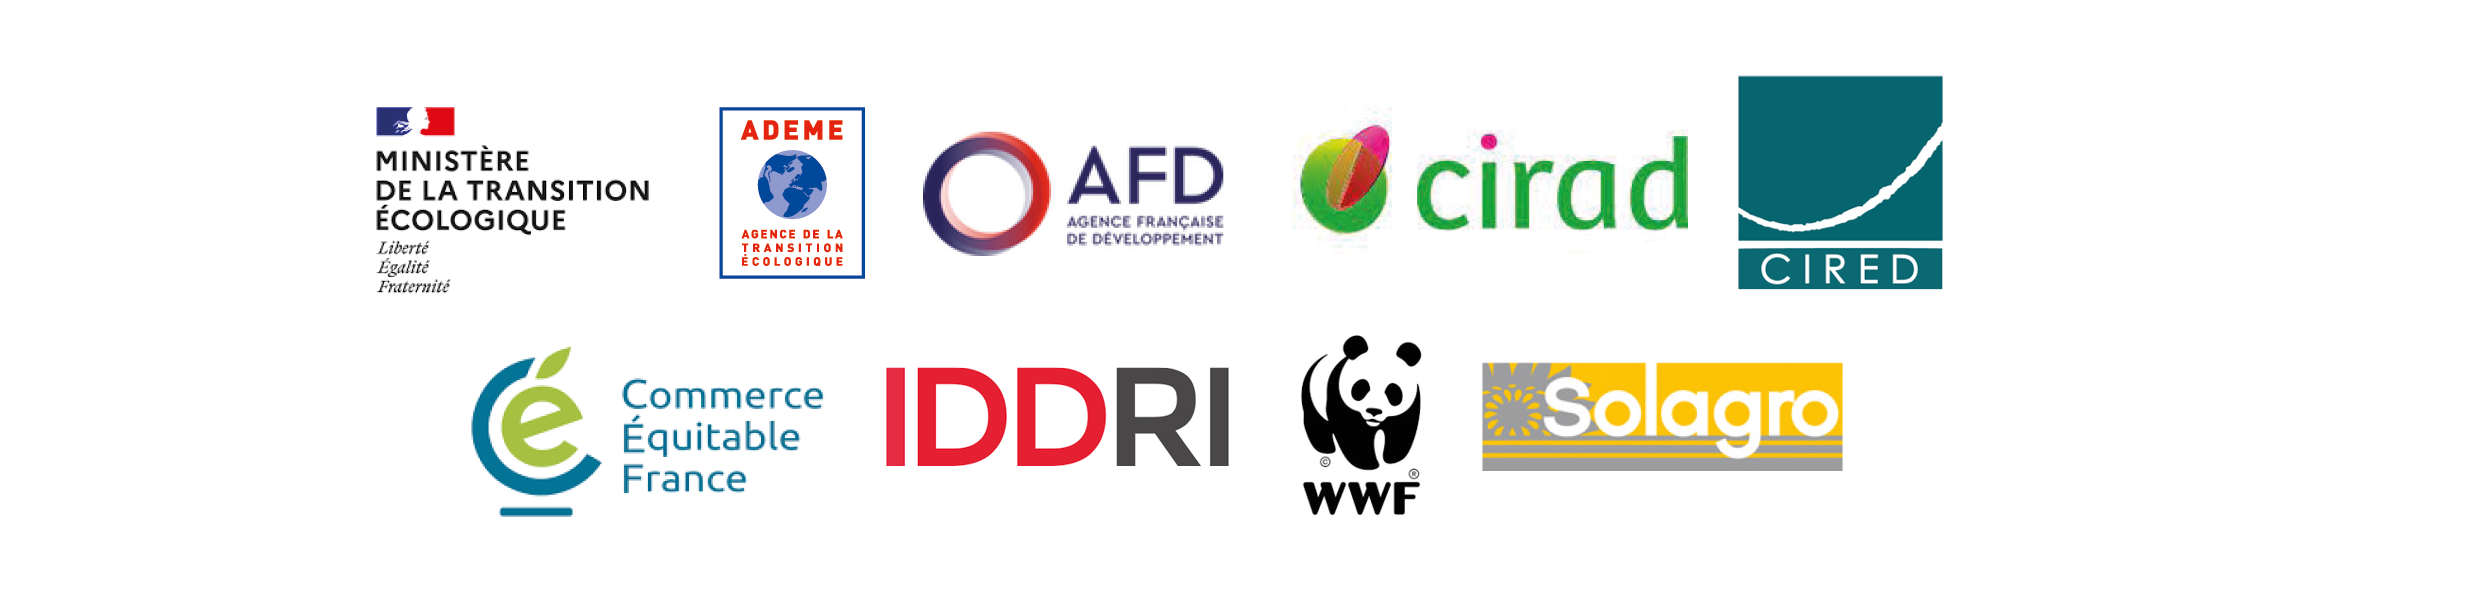 Ministère de la Transition écologique, Ademe, AFD, CIRAD, CIRED, Commerce Équitable, IDDRI, WWF, Solagro